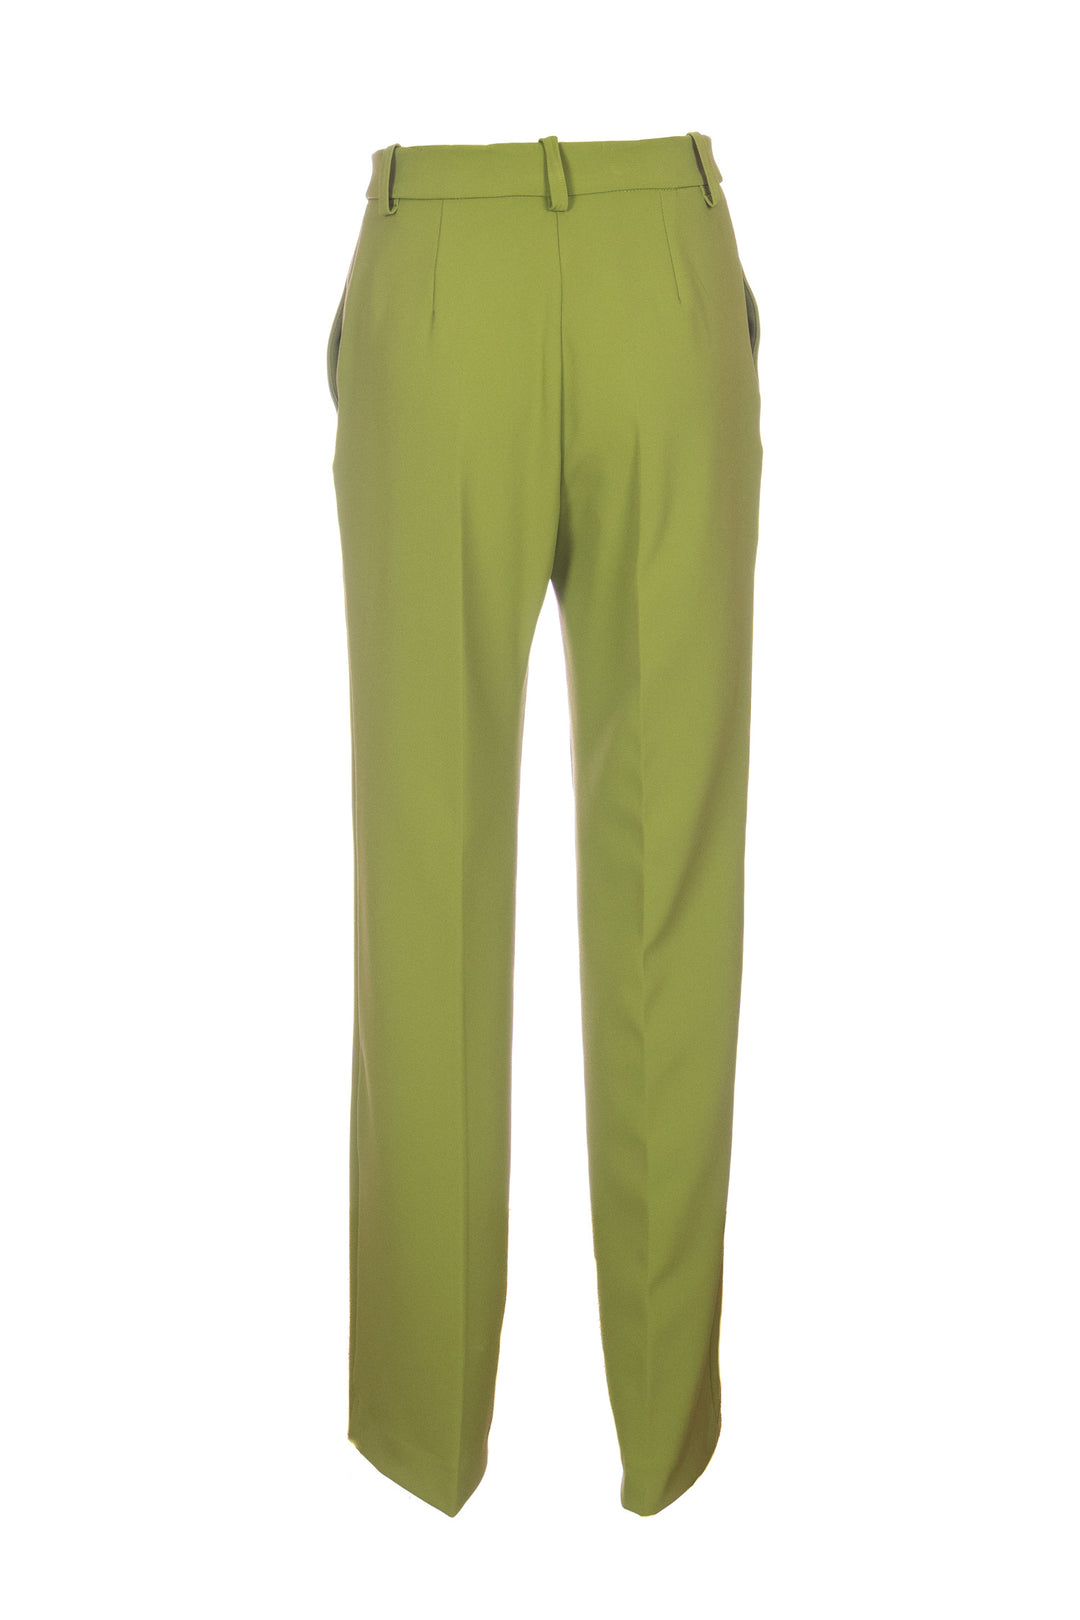 KAOS Pantalone dritto verde in tessuto tecnico - Mancinelli 1954